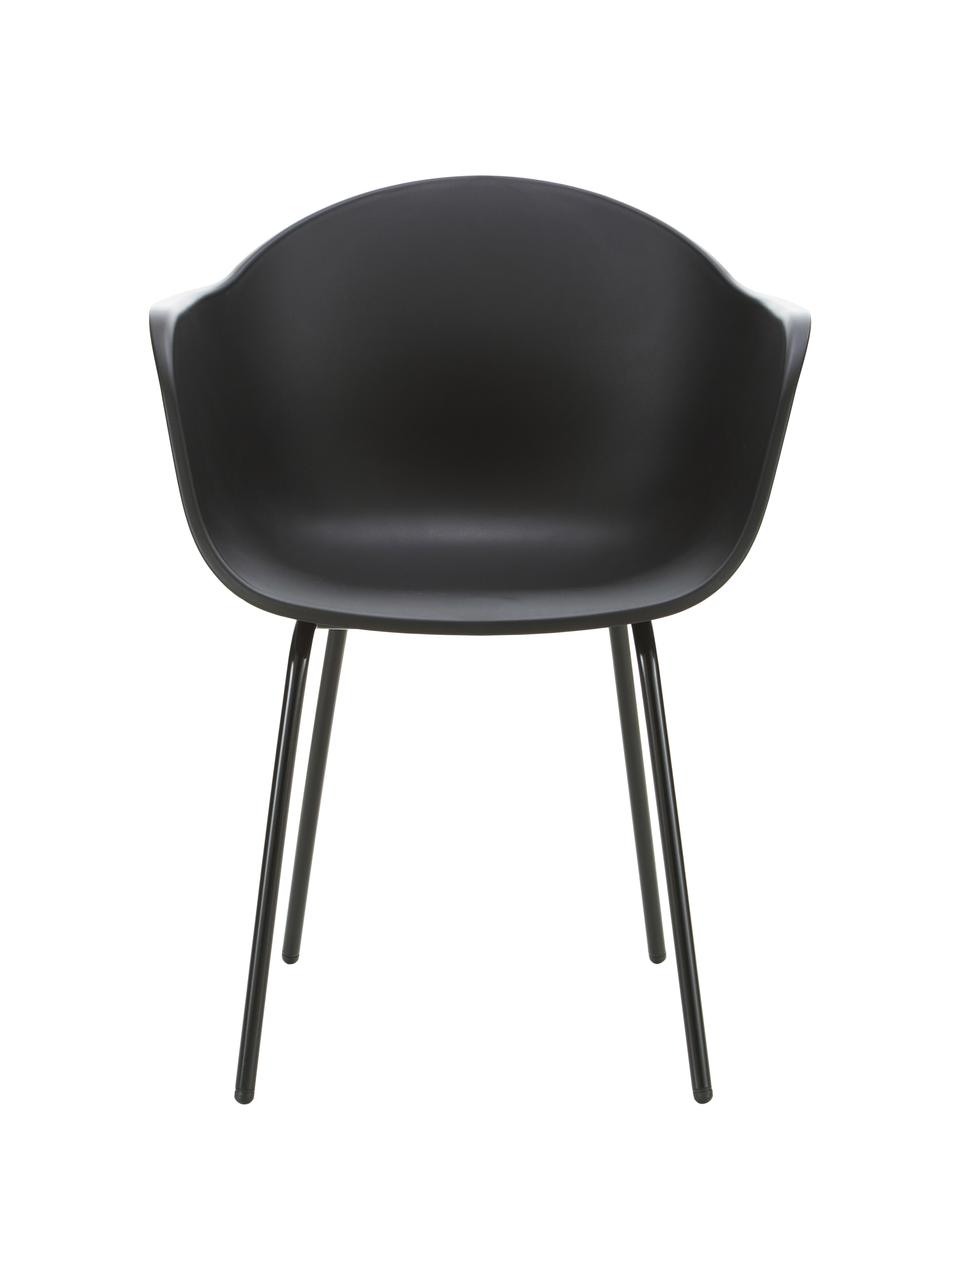 Gartenstuhl Claire, Sitzschale: 65% Kunststoff, 35% Fiber, Beine: Metall, pulverbeschichtet, Schwarz, B 60 x T 54 cm